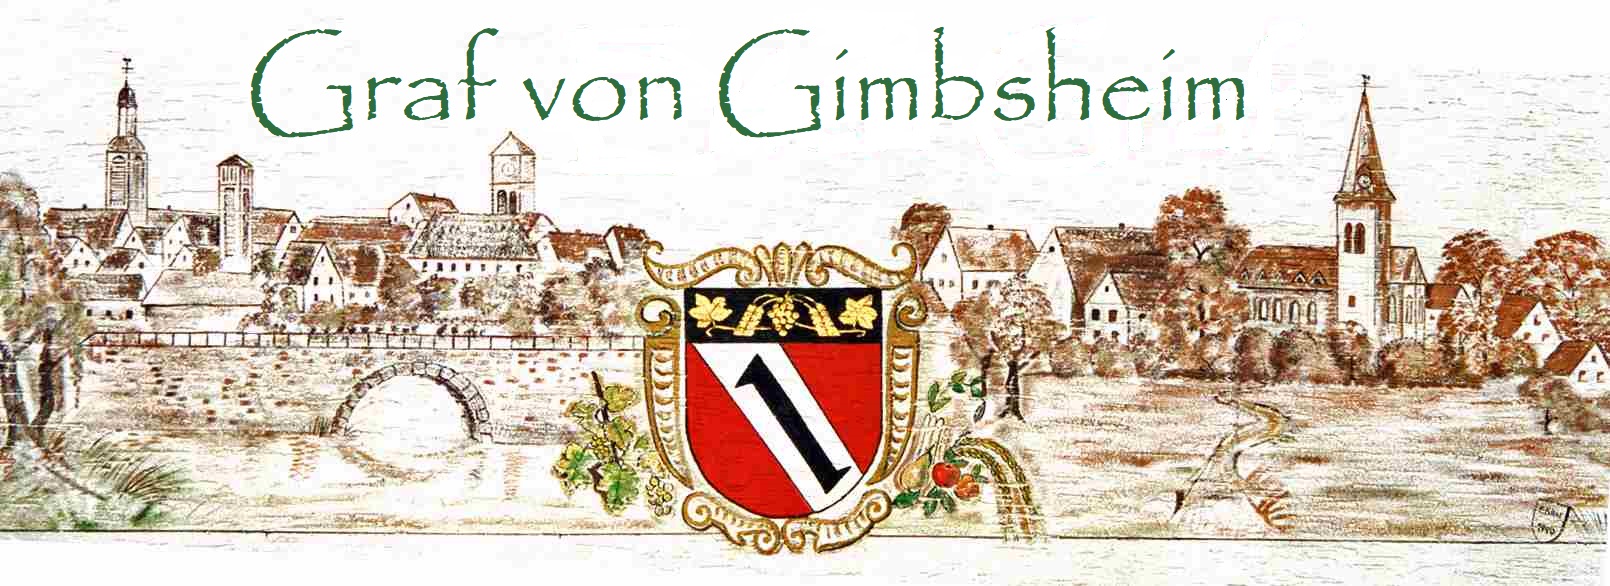 Graf von Gimbsheim-Designs